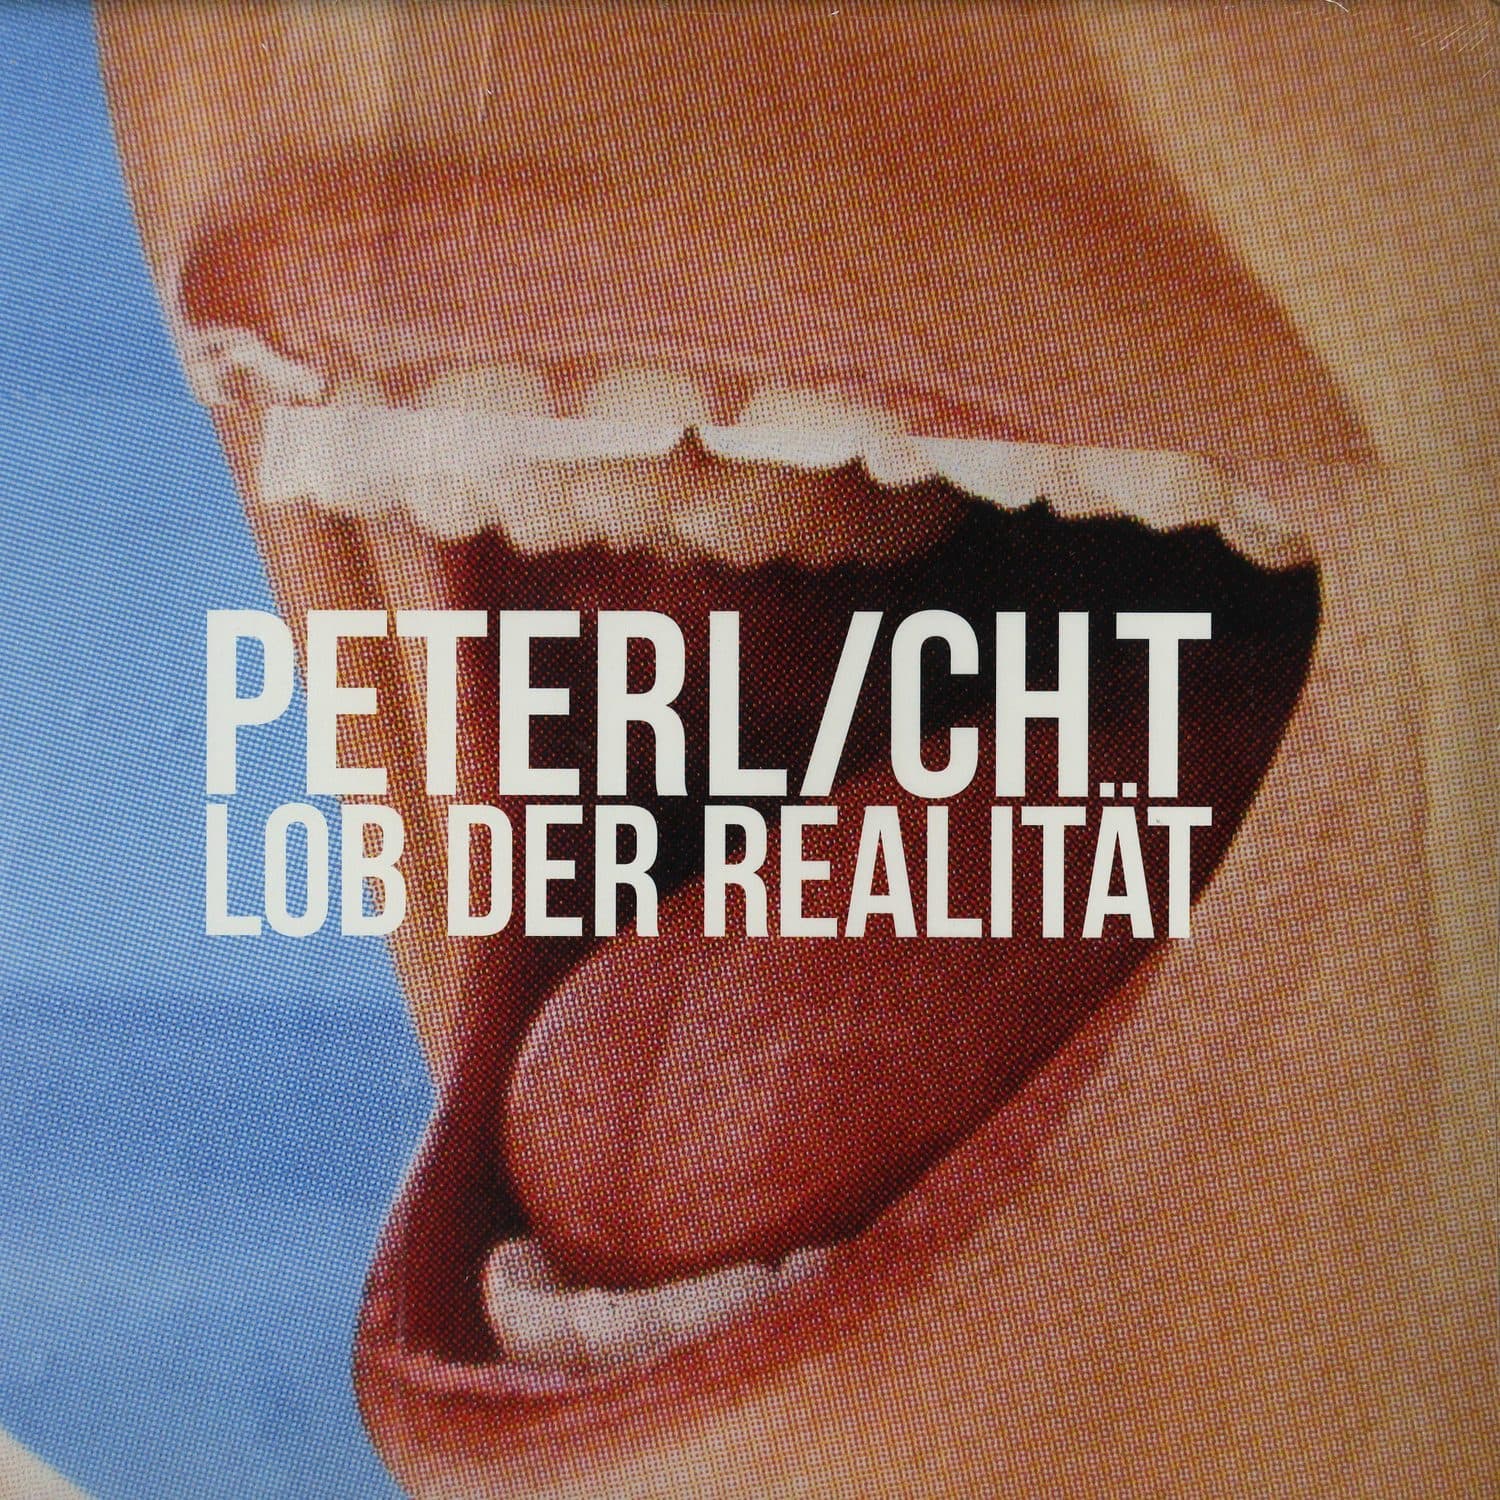 PeterLicht - LOB DER REALITAET 